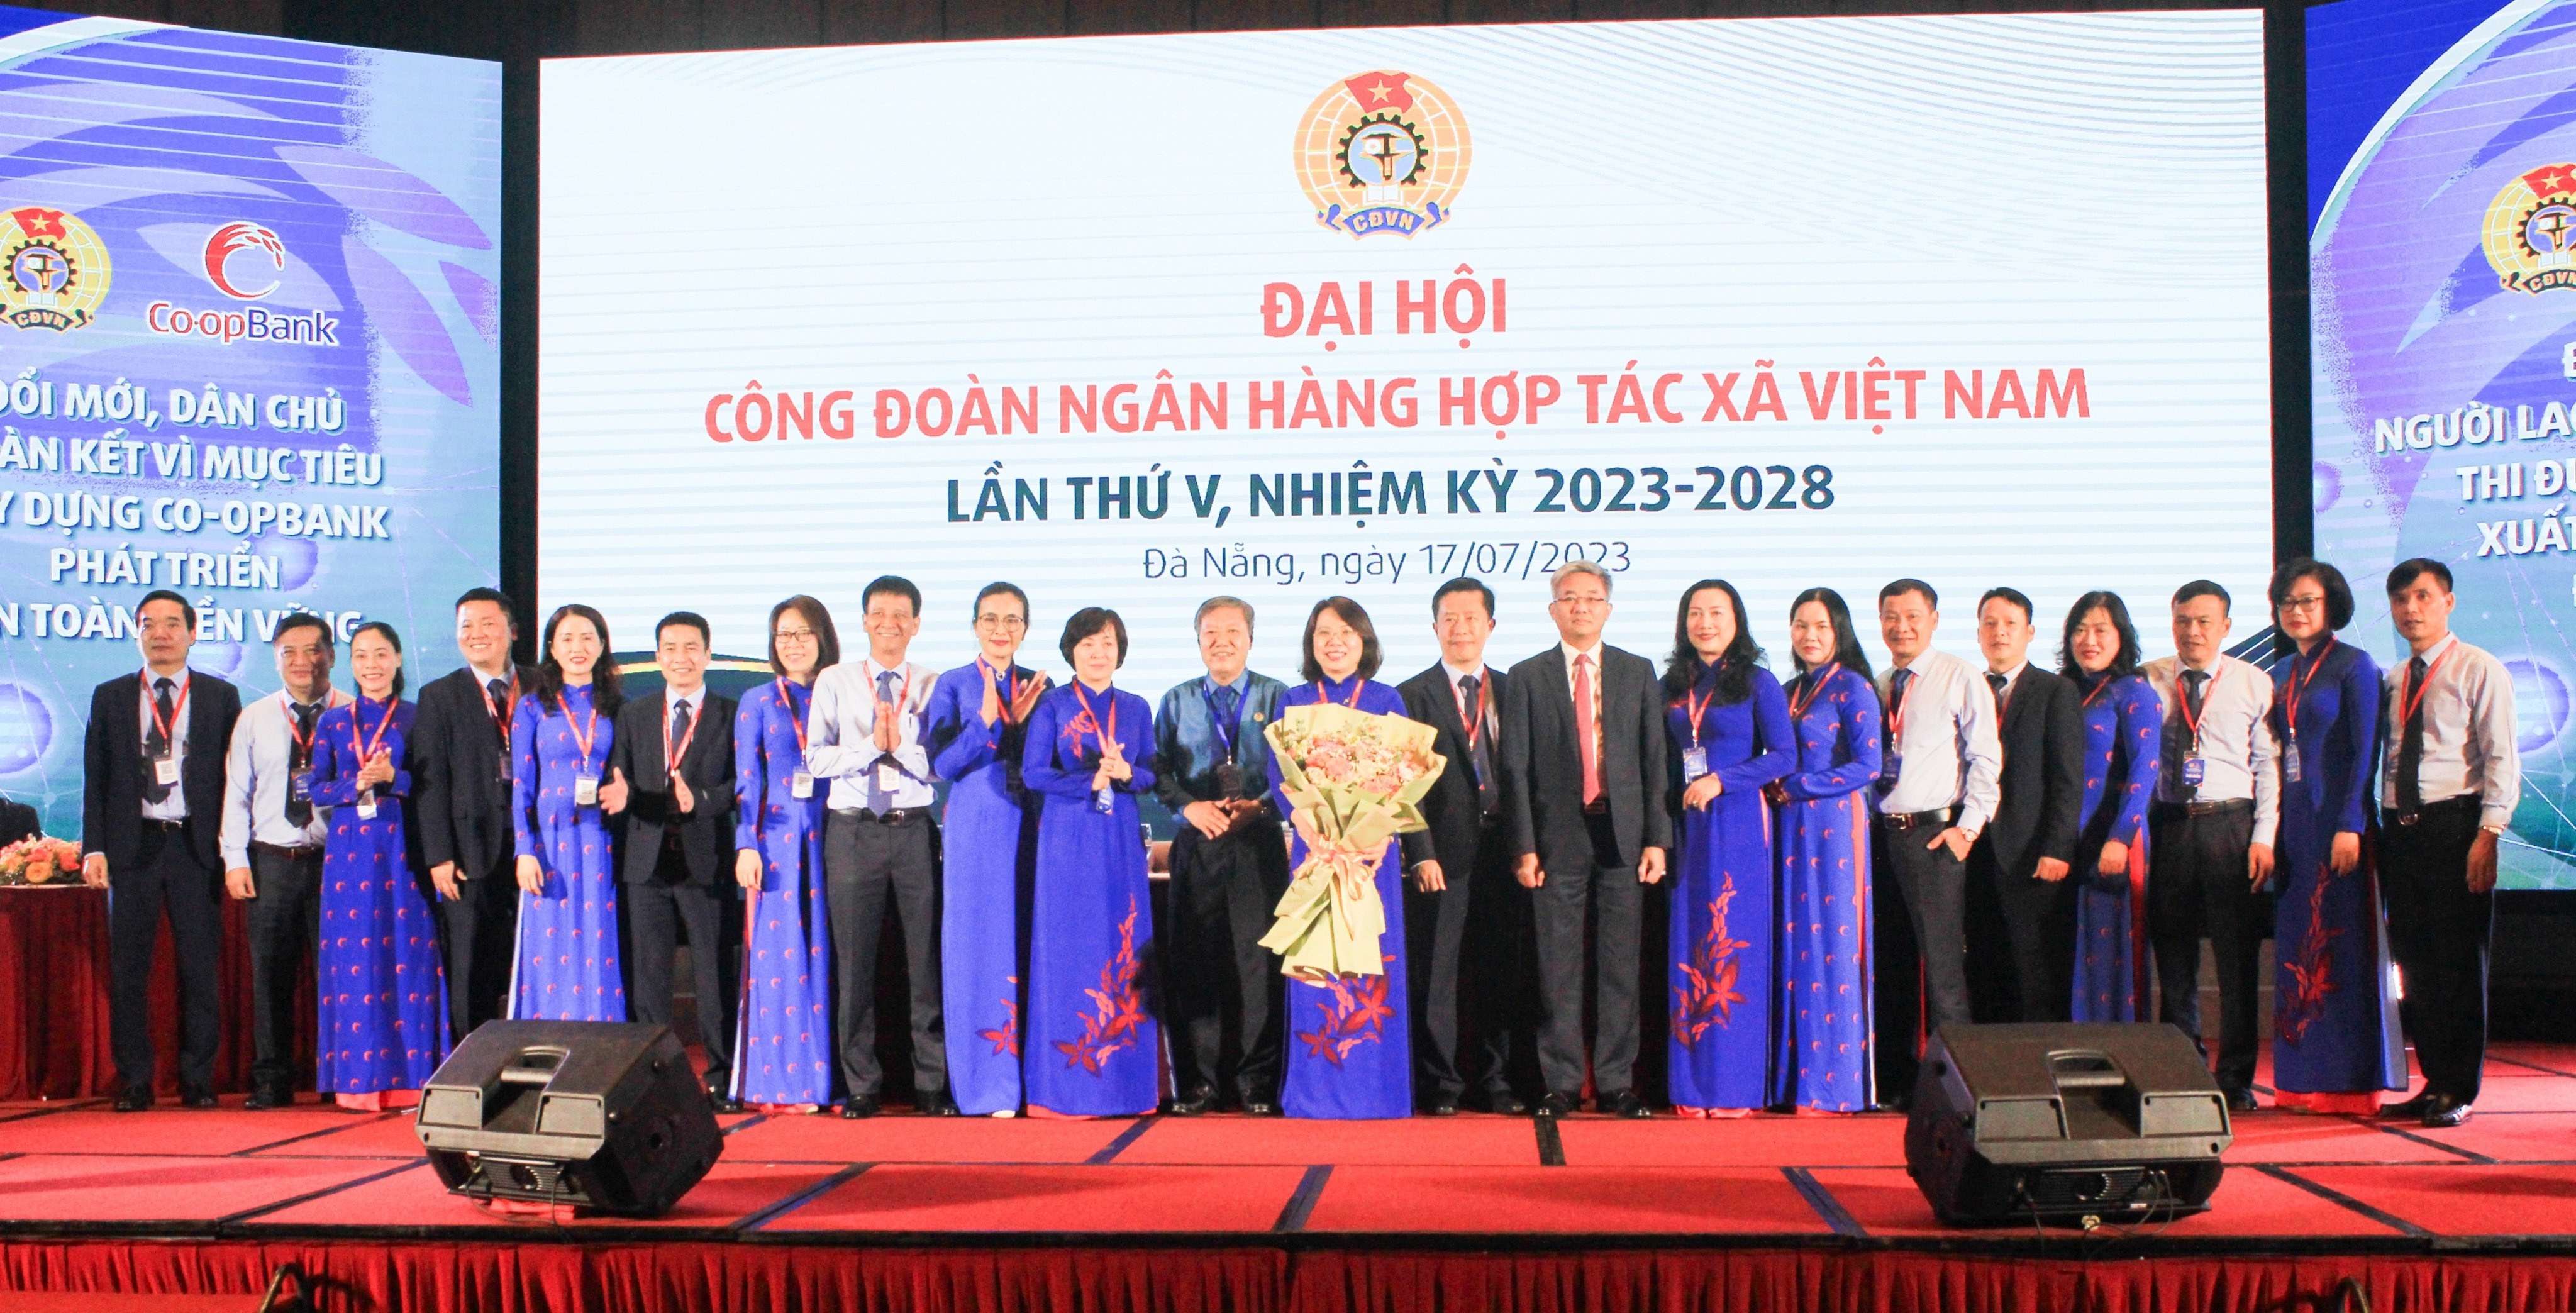 Ban chấp hành Công đoàn Co-opBank nhiệm kỳ 2023-2028 ra mắt và chụp ảnh lưu niệm cùng lãnh đạo Công đoàn Ngân hàng Việt Nam và Co-opBank tại Đại hội